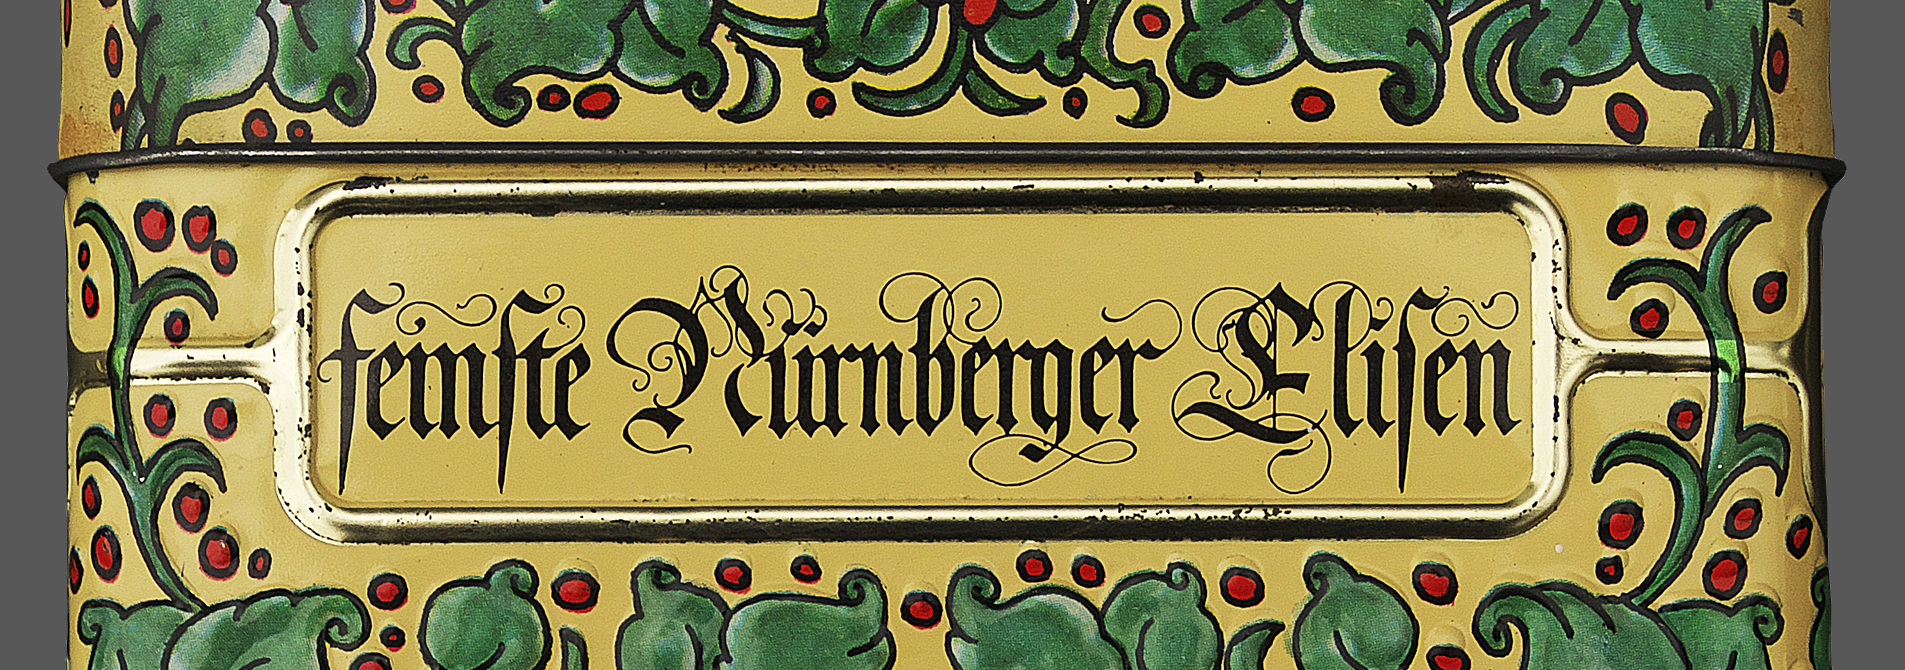 Nuremberg gingerbread